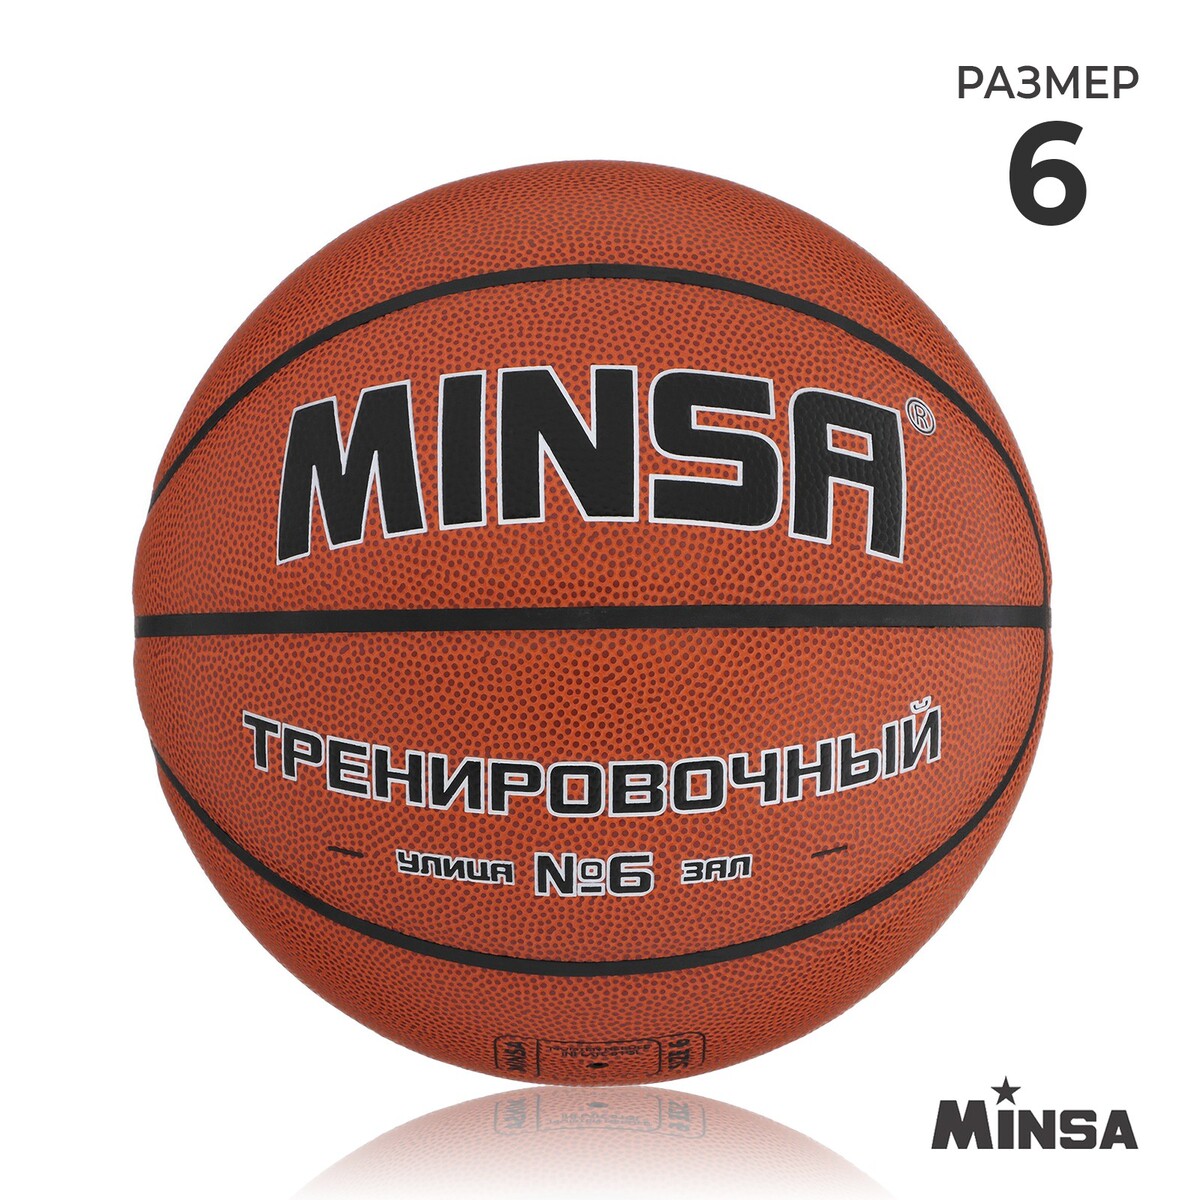 Баскетбольный мяч minsa, тренировочный, pu, клееный, 8 панелей, р. 6 баскетбольный мяч minsa матчевый microfiber pu клееный 8 панелей р 7